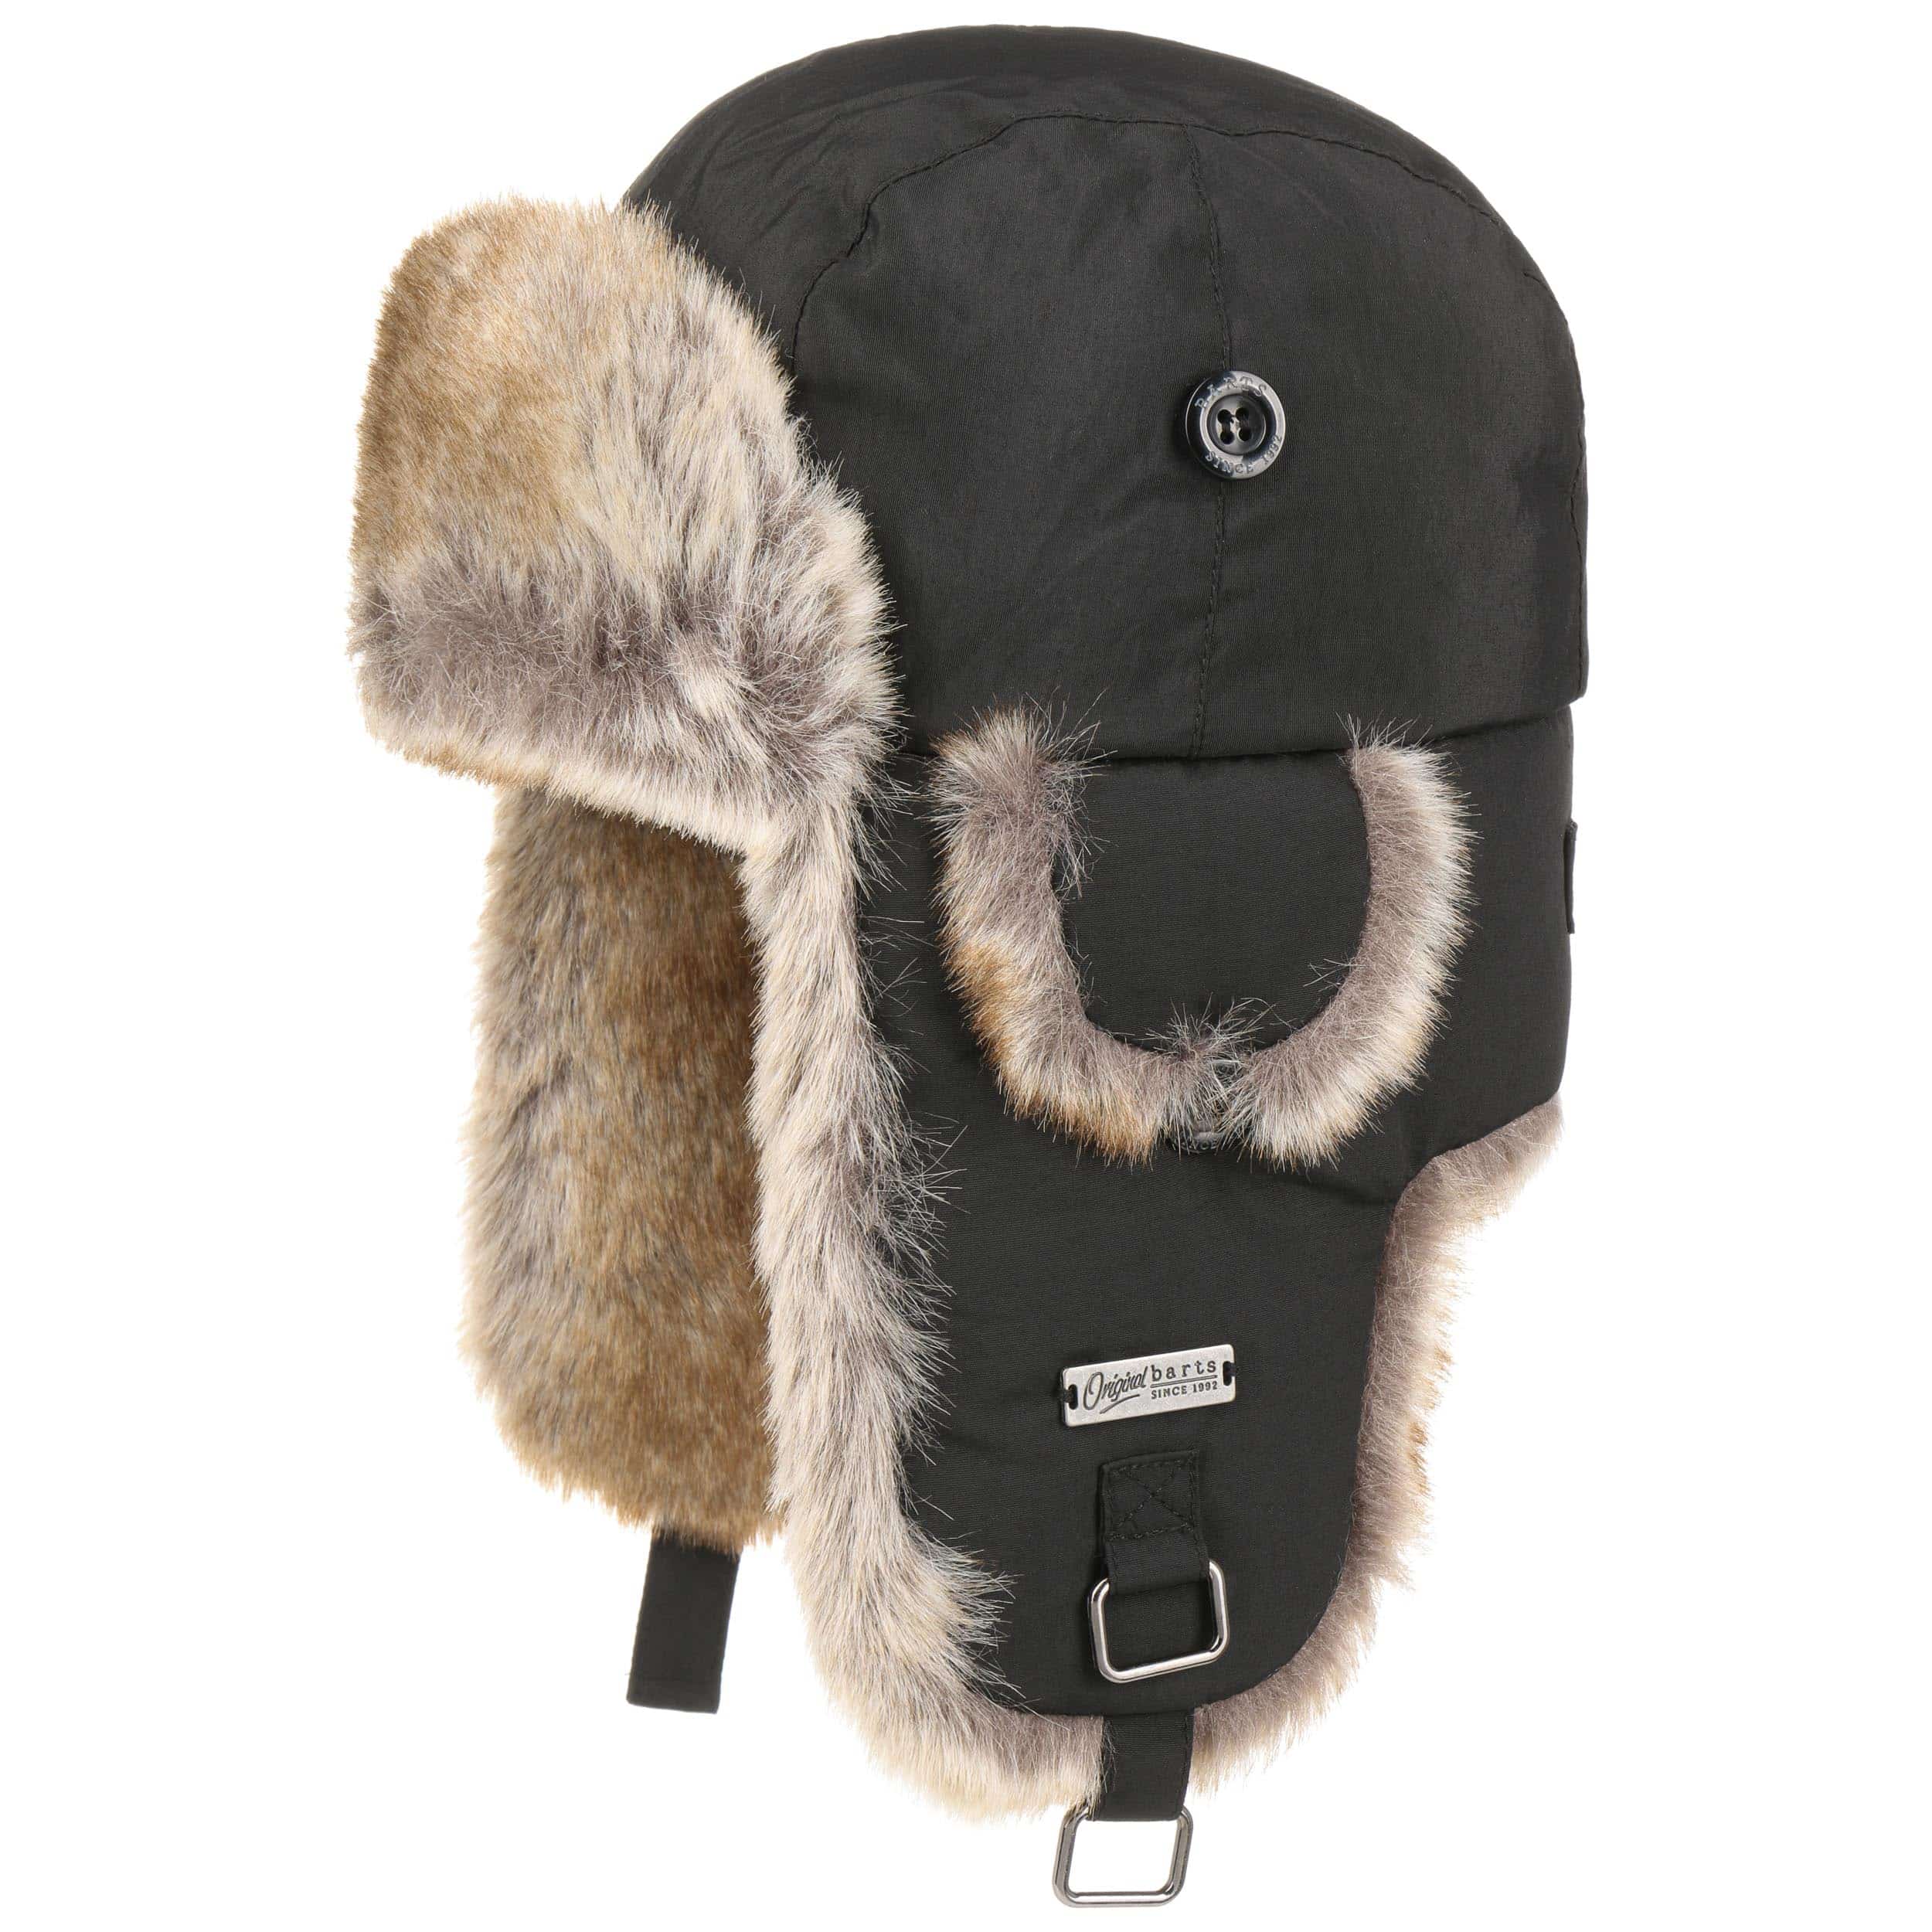 Accessori Cappelli e berretti Cappelli invernali Cappelli stile aviatore Cappello trapper chapka 